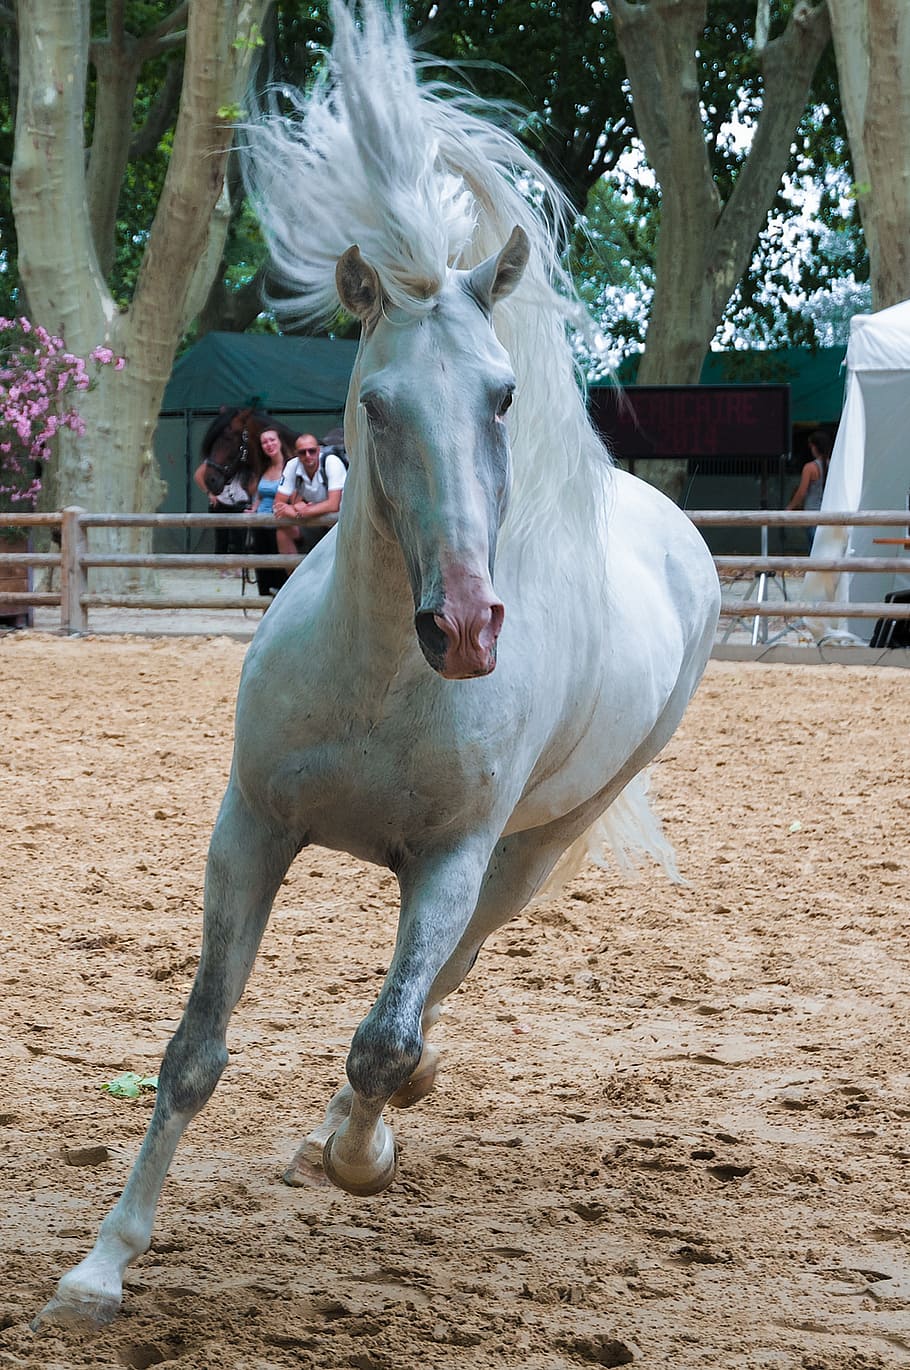 white horse running on beige dirt field during daytime, horseback riding